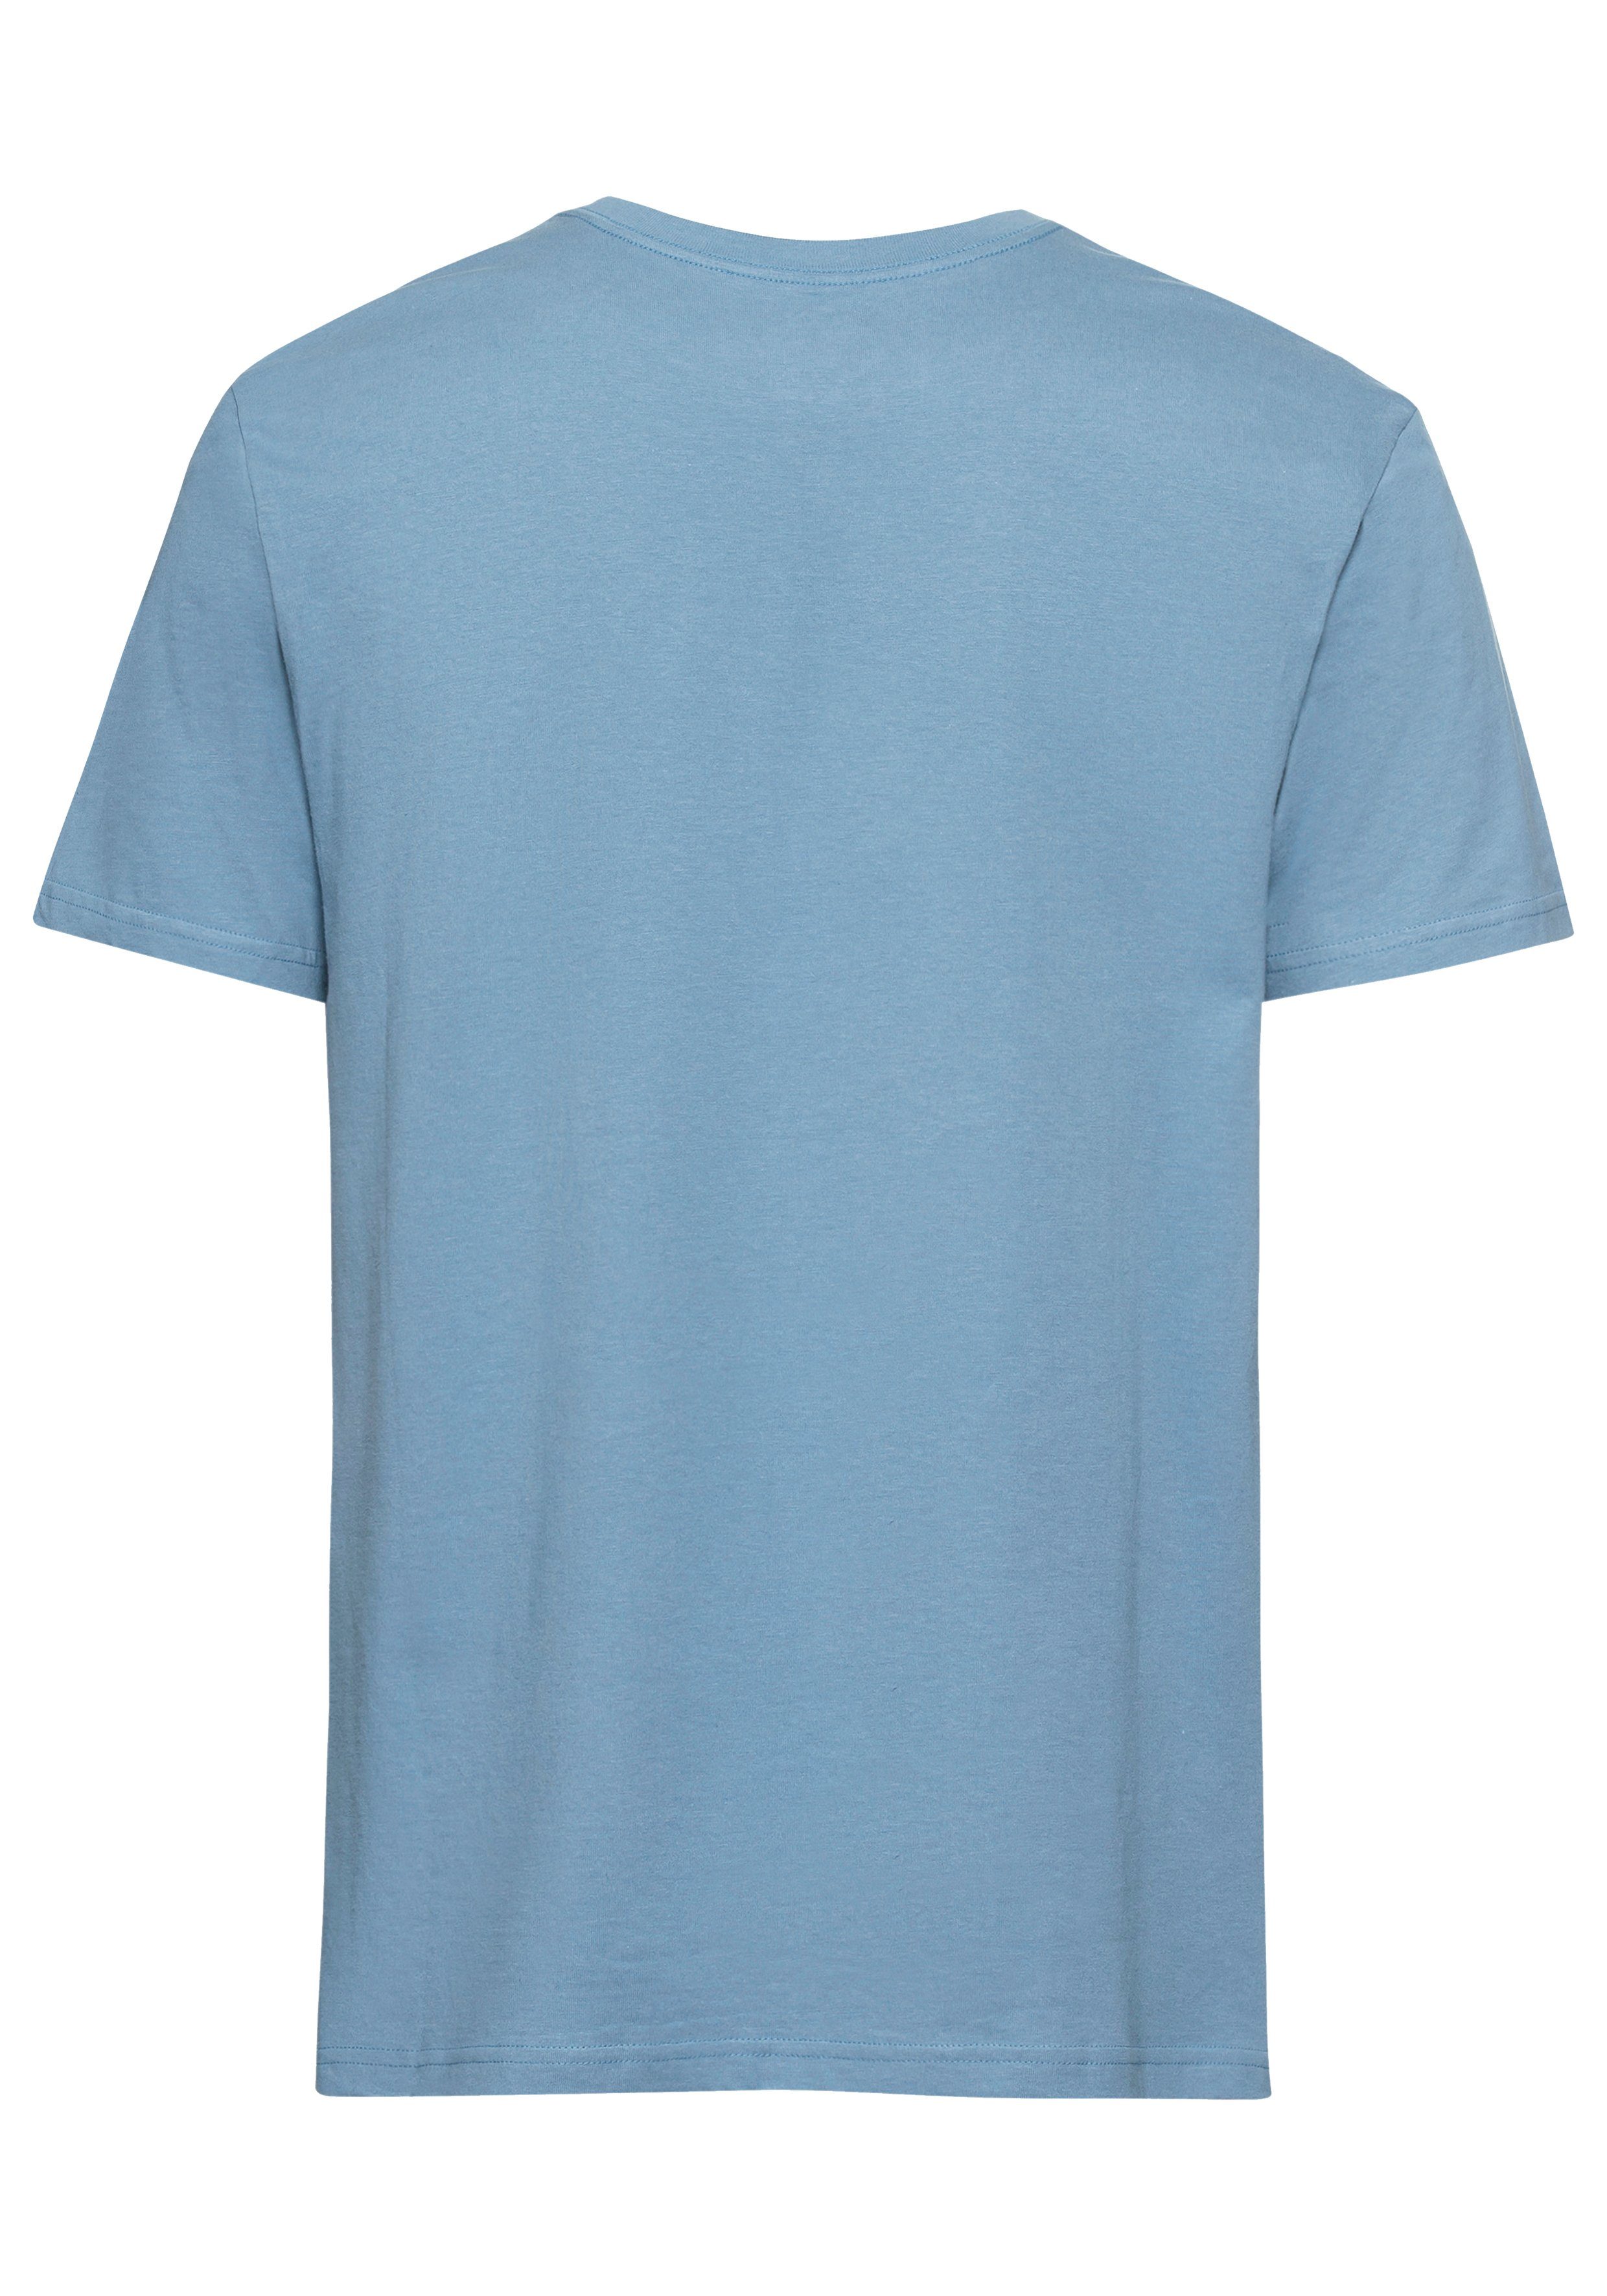 Quiksilver T-shirt (2-delig Set van 2)